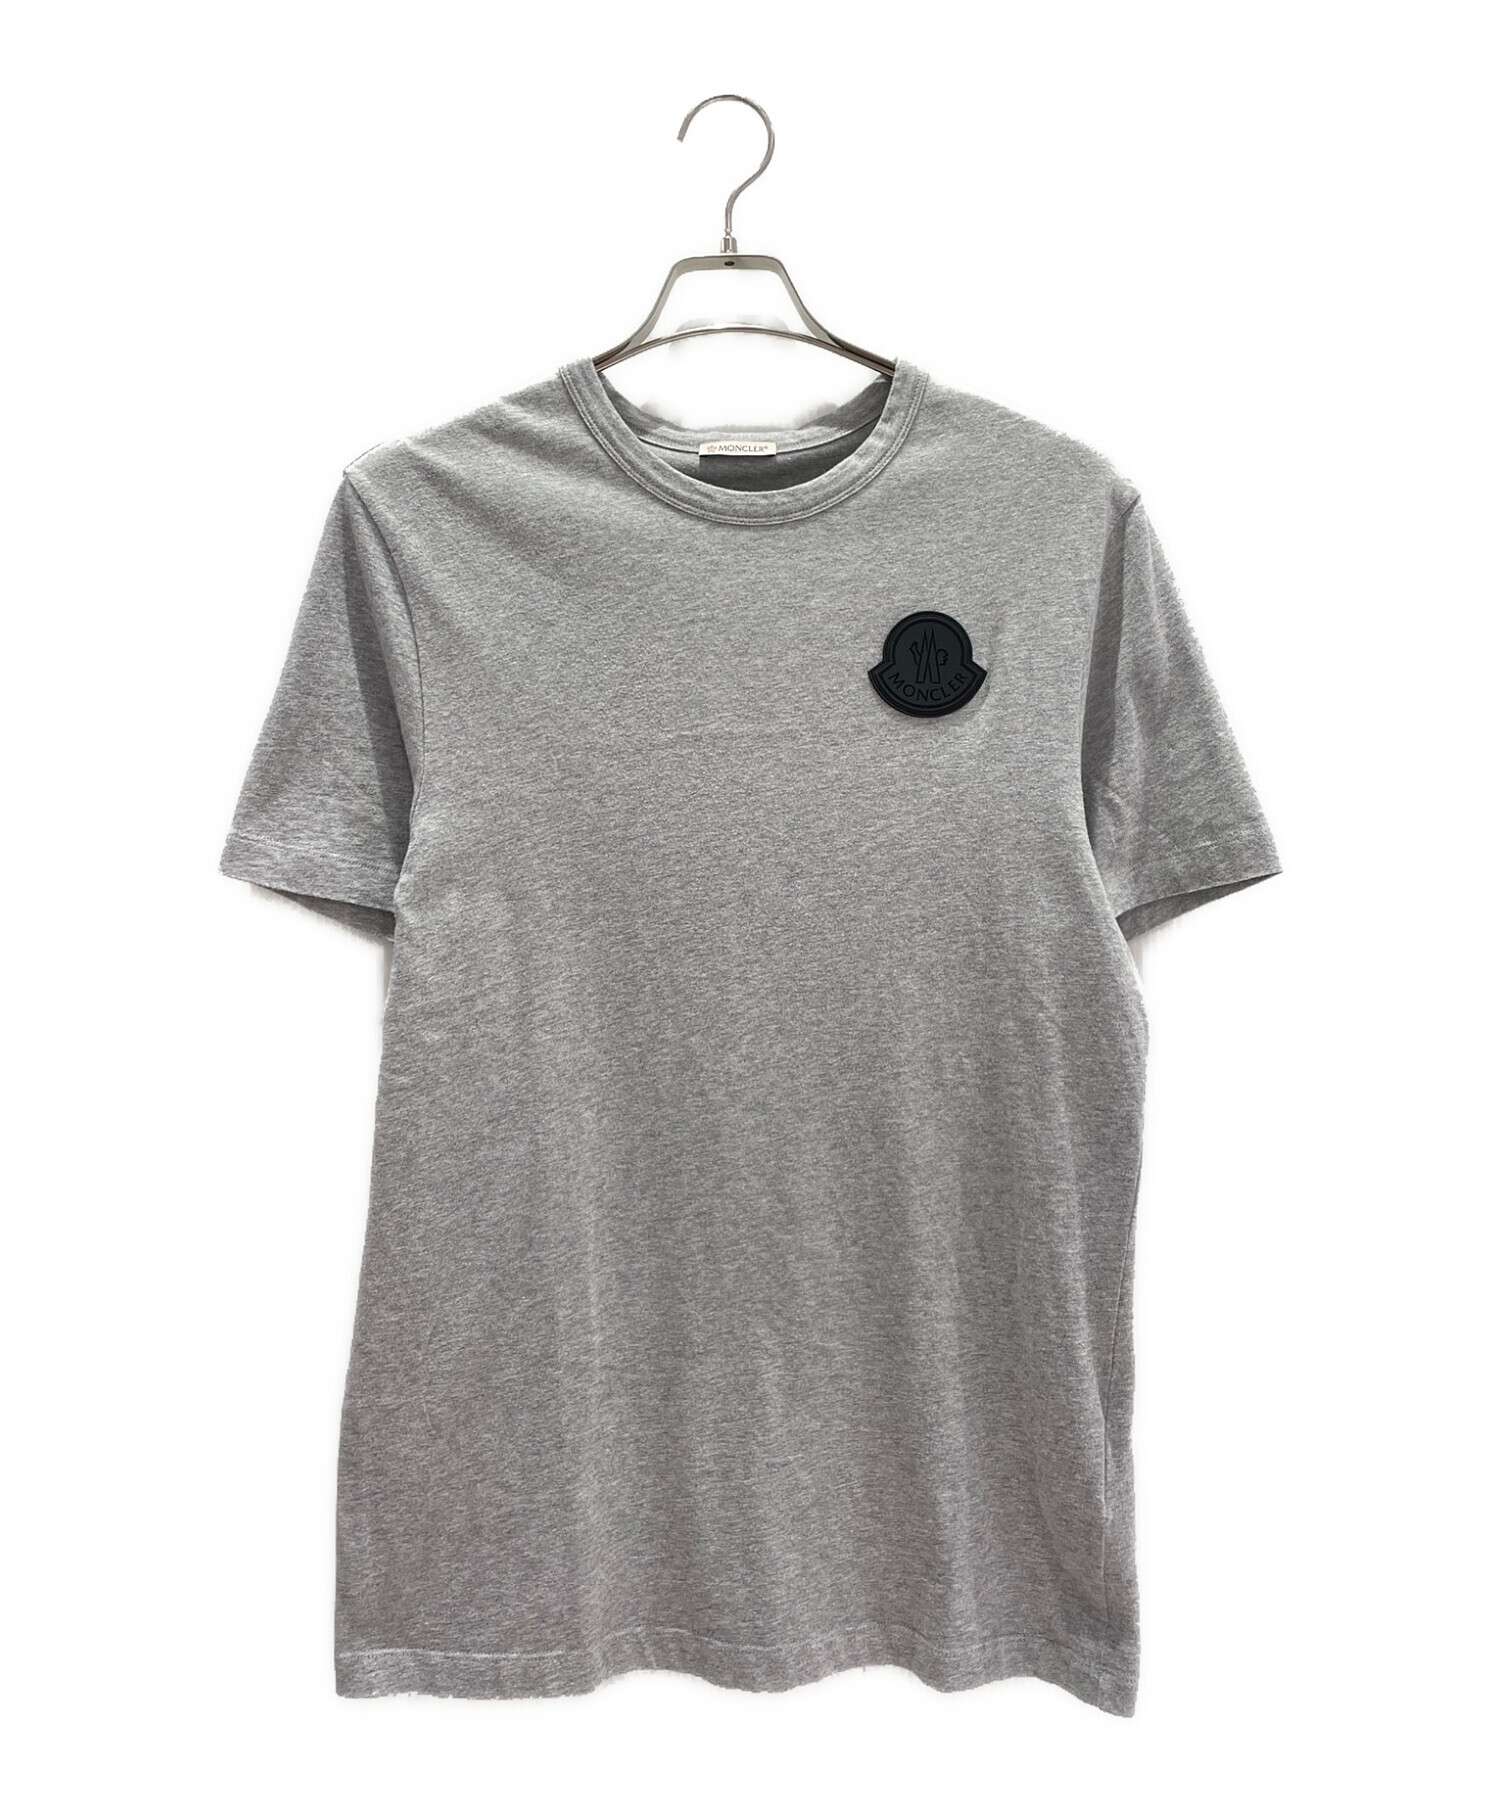 MONCLER (モンクレール) ラバープリントロゴパッチTシャツ グレー サイズ:S